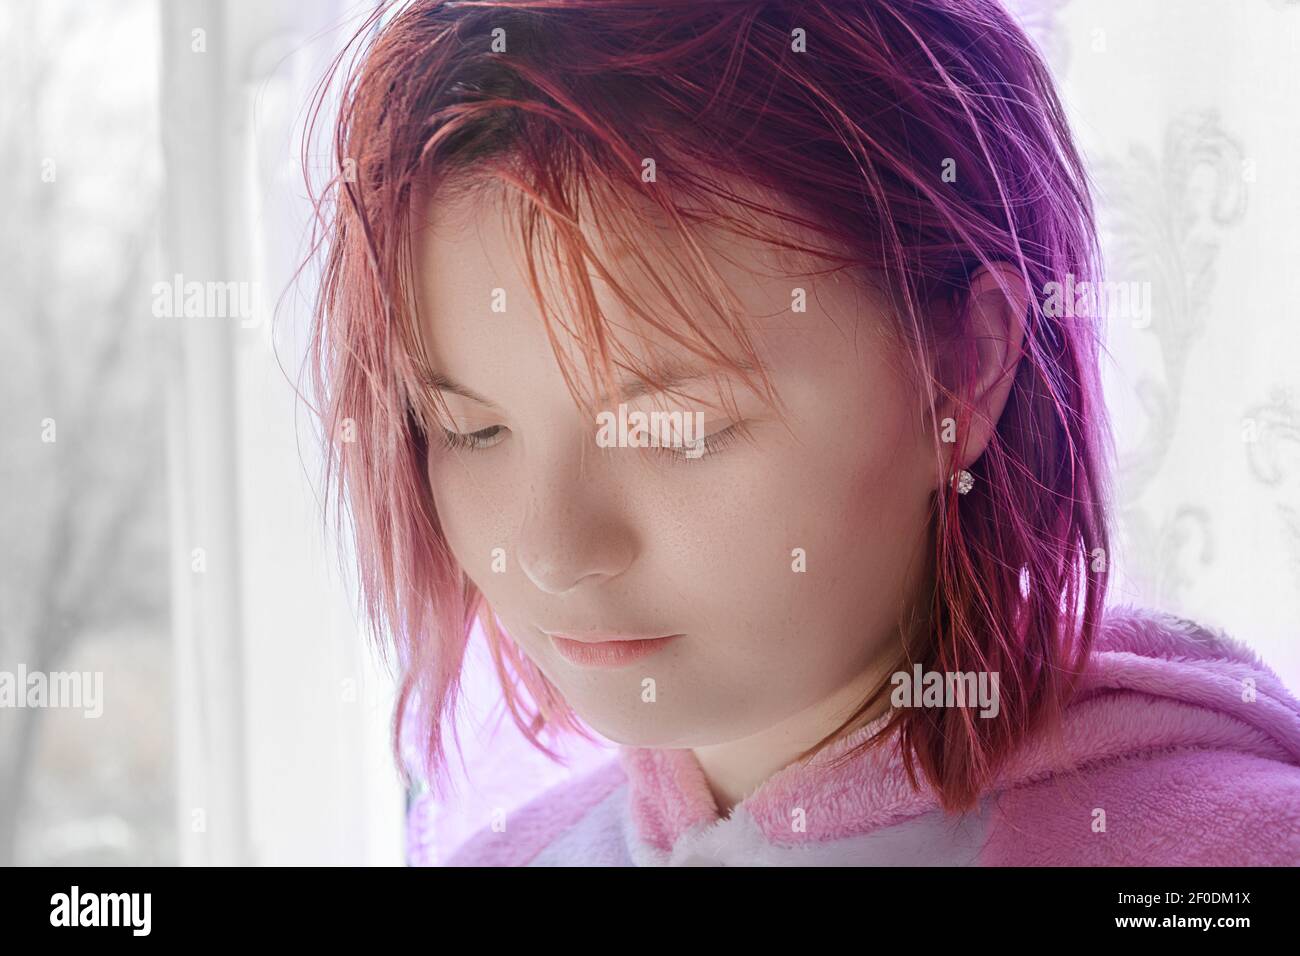 Portrait von Teenager-Mädchen mit roten Haaren. Lady senkt ihre Augen und schaut nach unten. Traurige Emotionen im Gesicht. Nahaufnahme, selektiver Fokus. Stockfoto